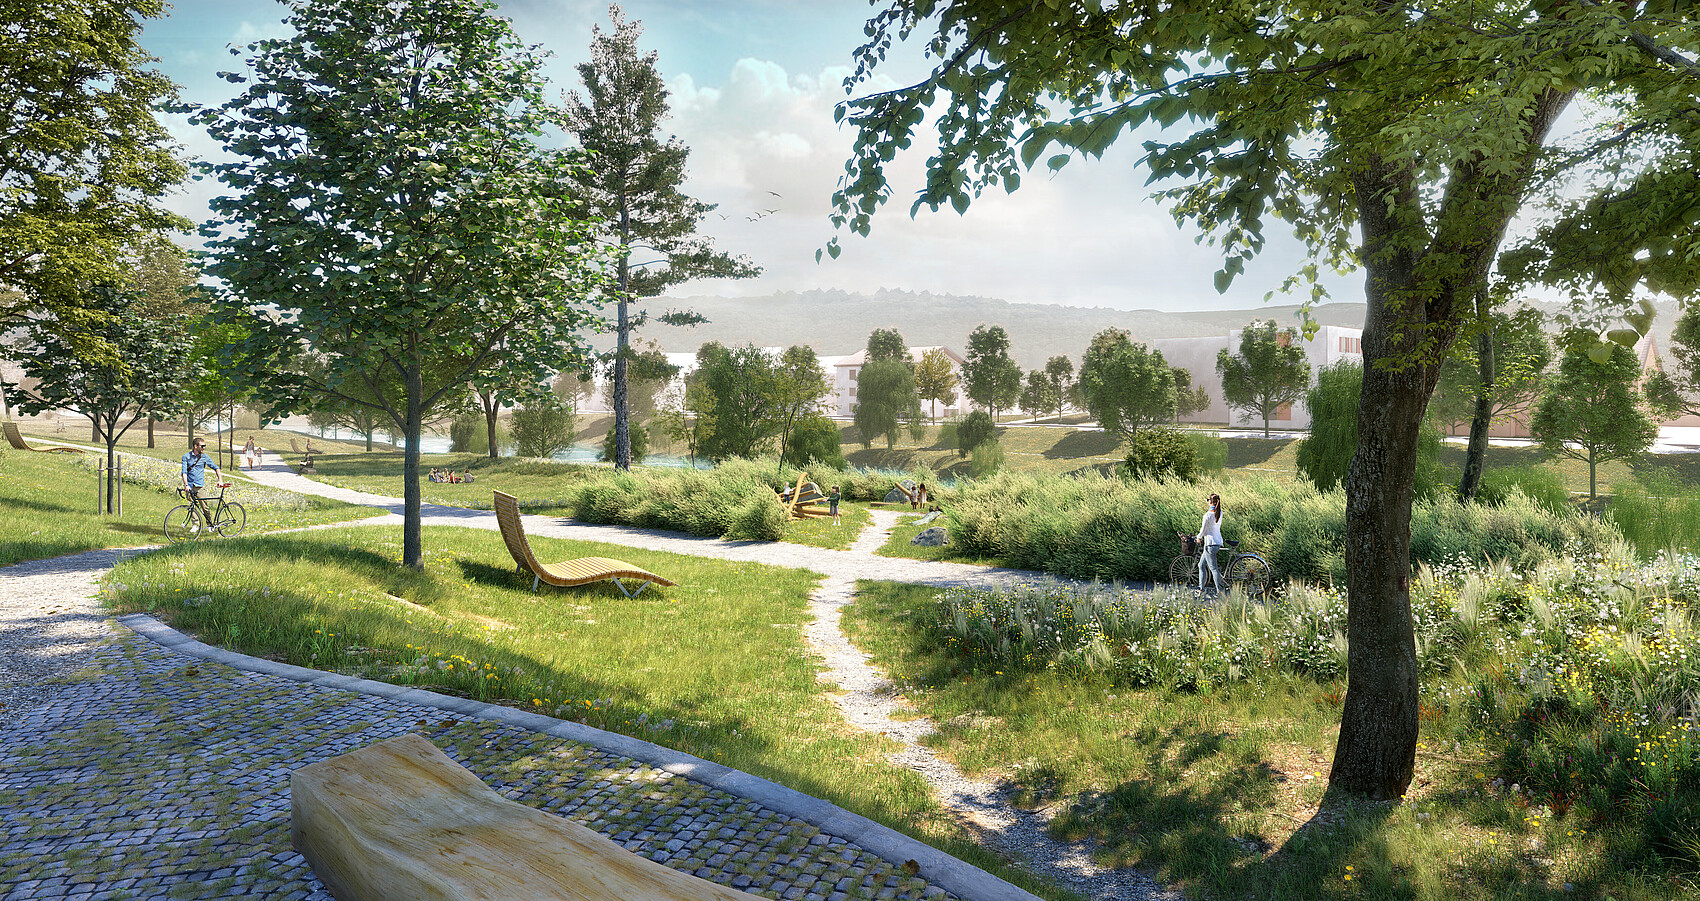 Das Bild zeigt Bäume, Grünflächen, eine Liegebank, Wege, Sträucher, zwei Radfahrer, Kinderspielplatz, spielende Kinder